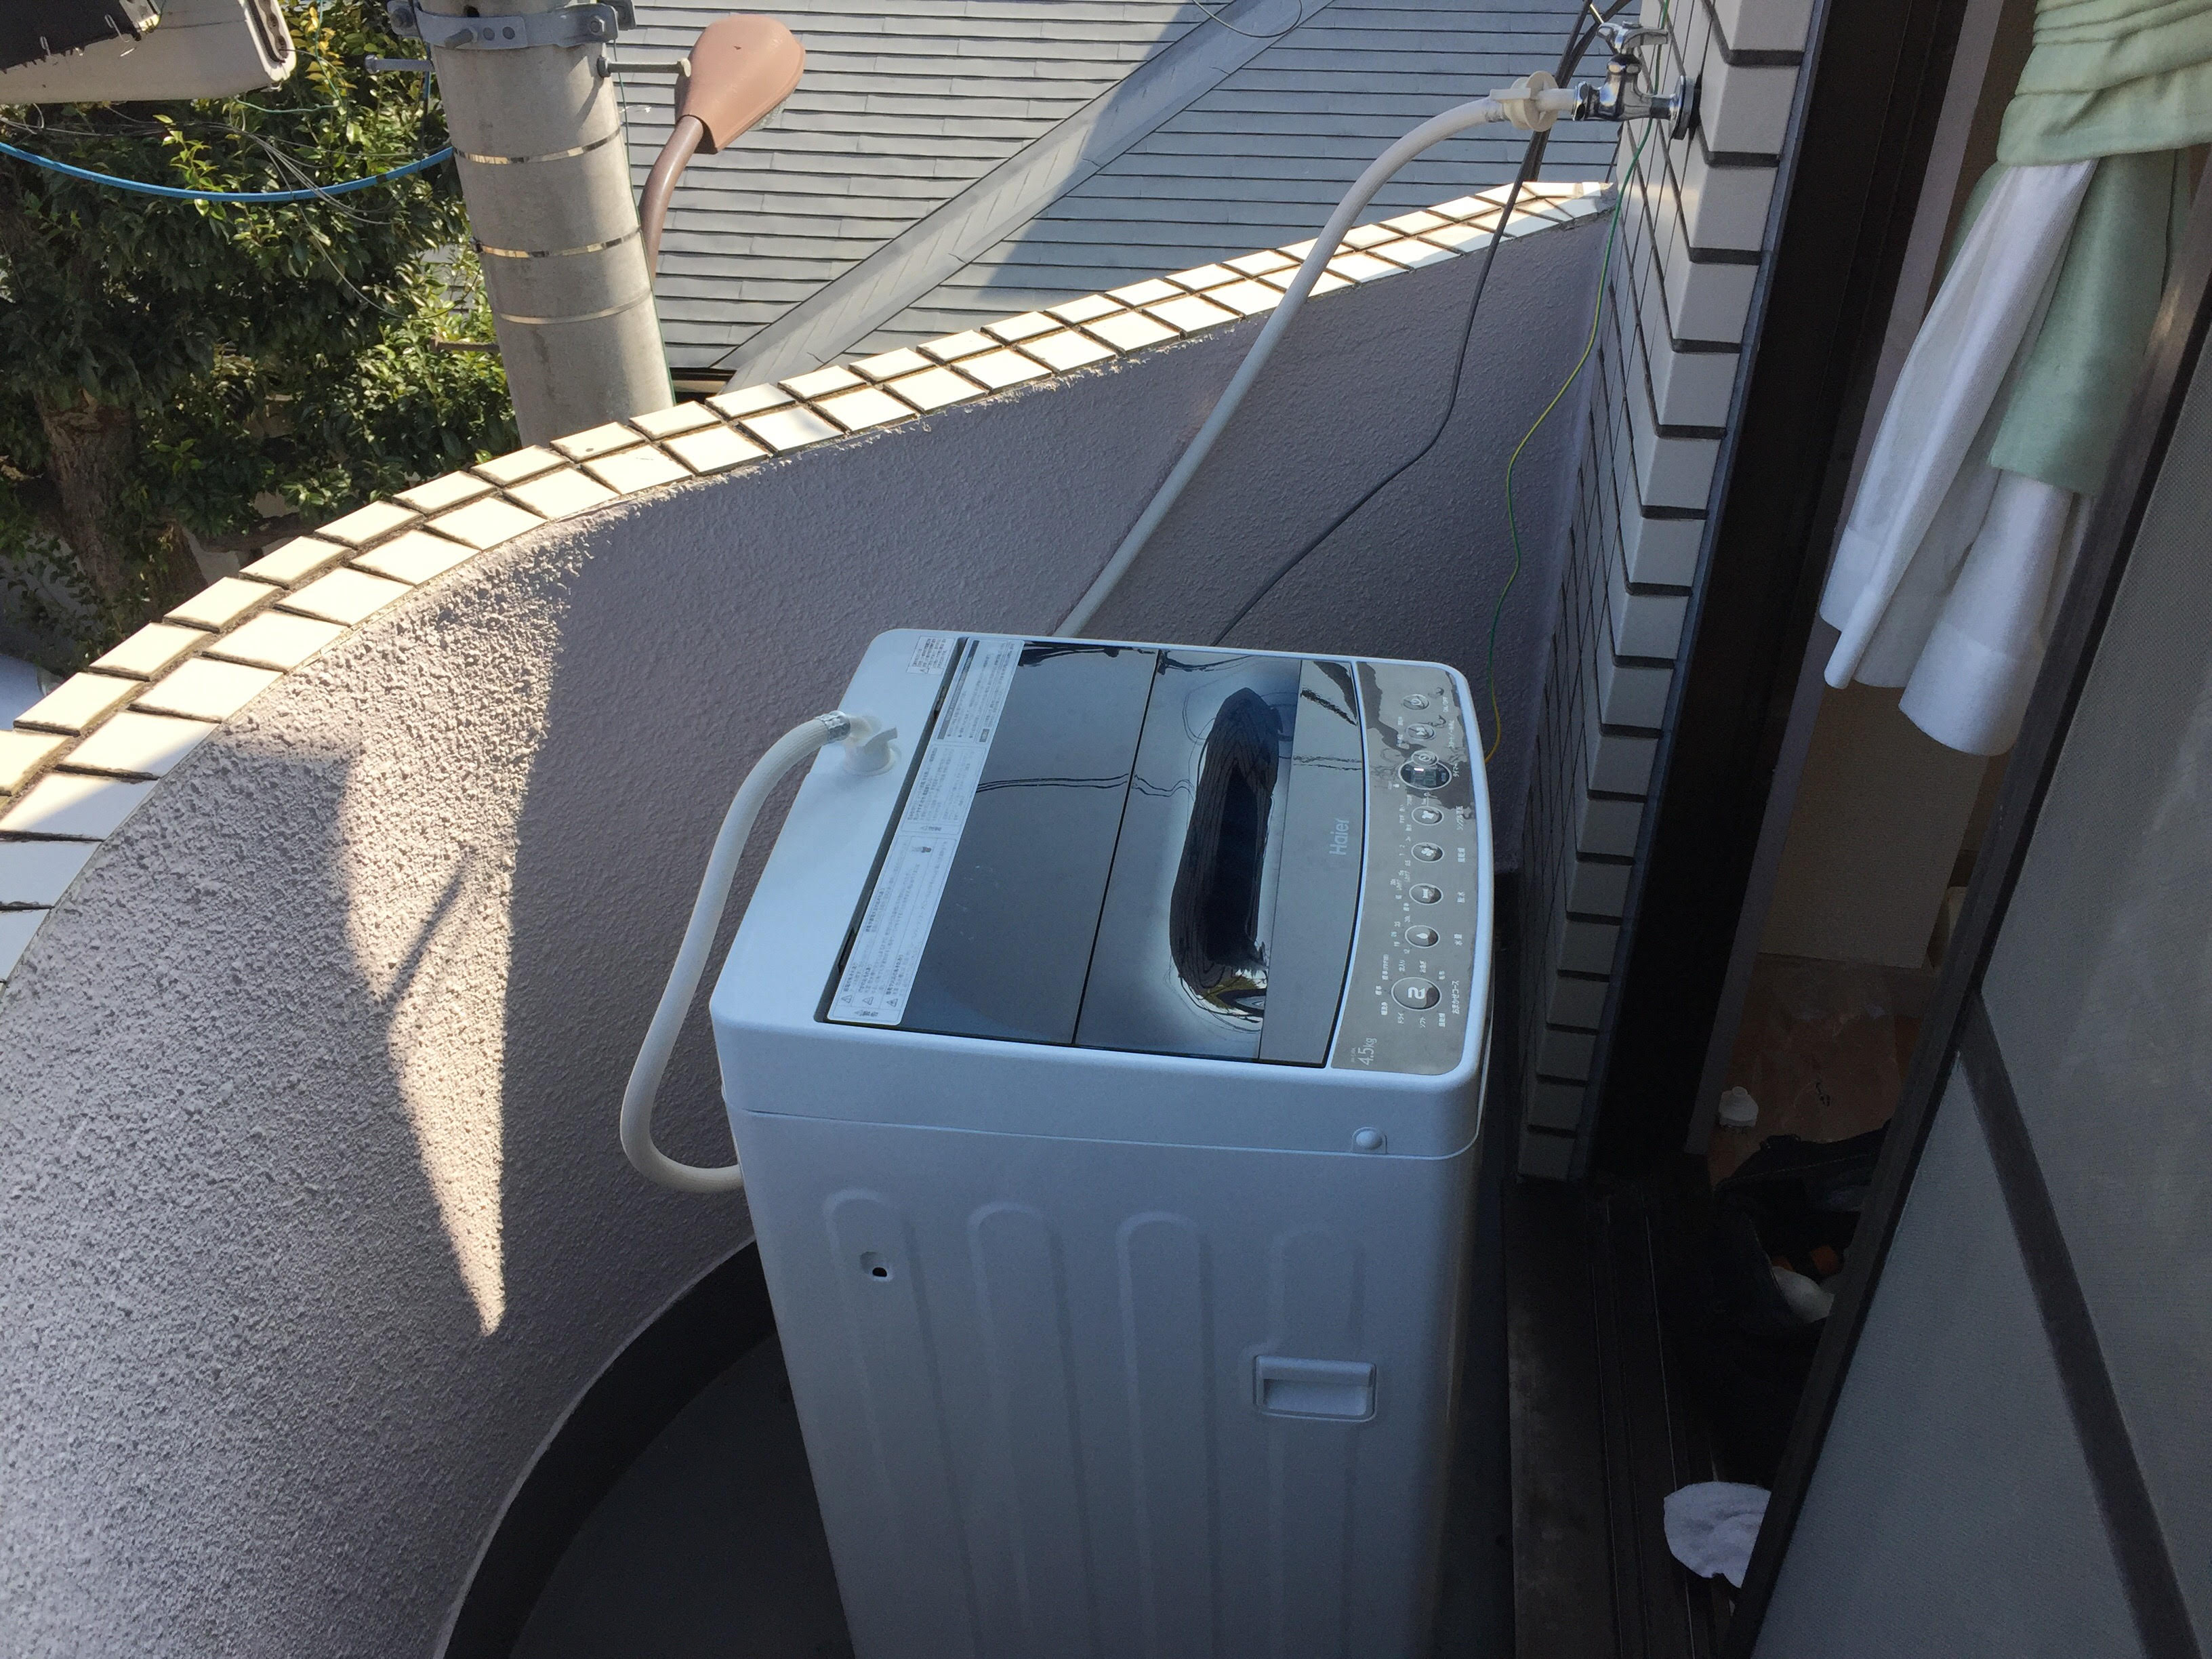 川崎区にて洗濯機の取り付け依頼を頂きました 水さぽ